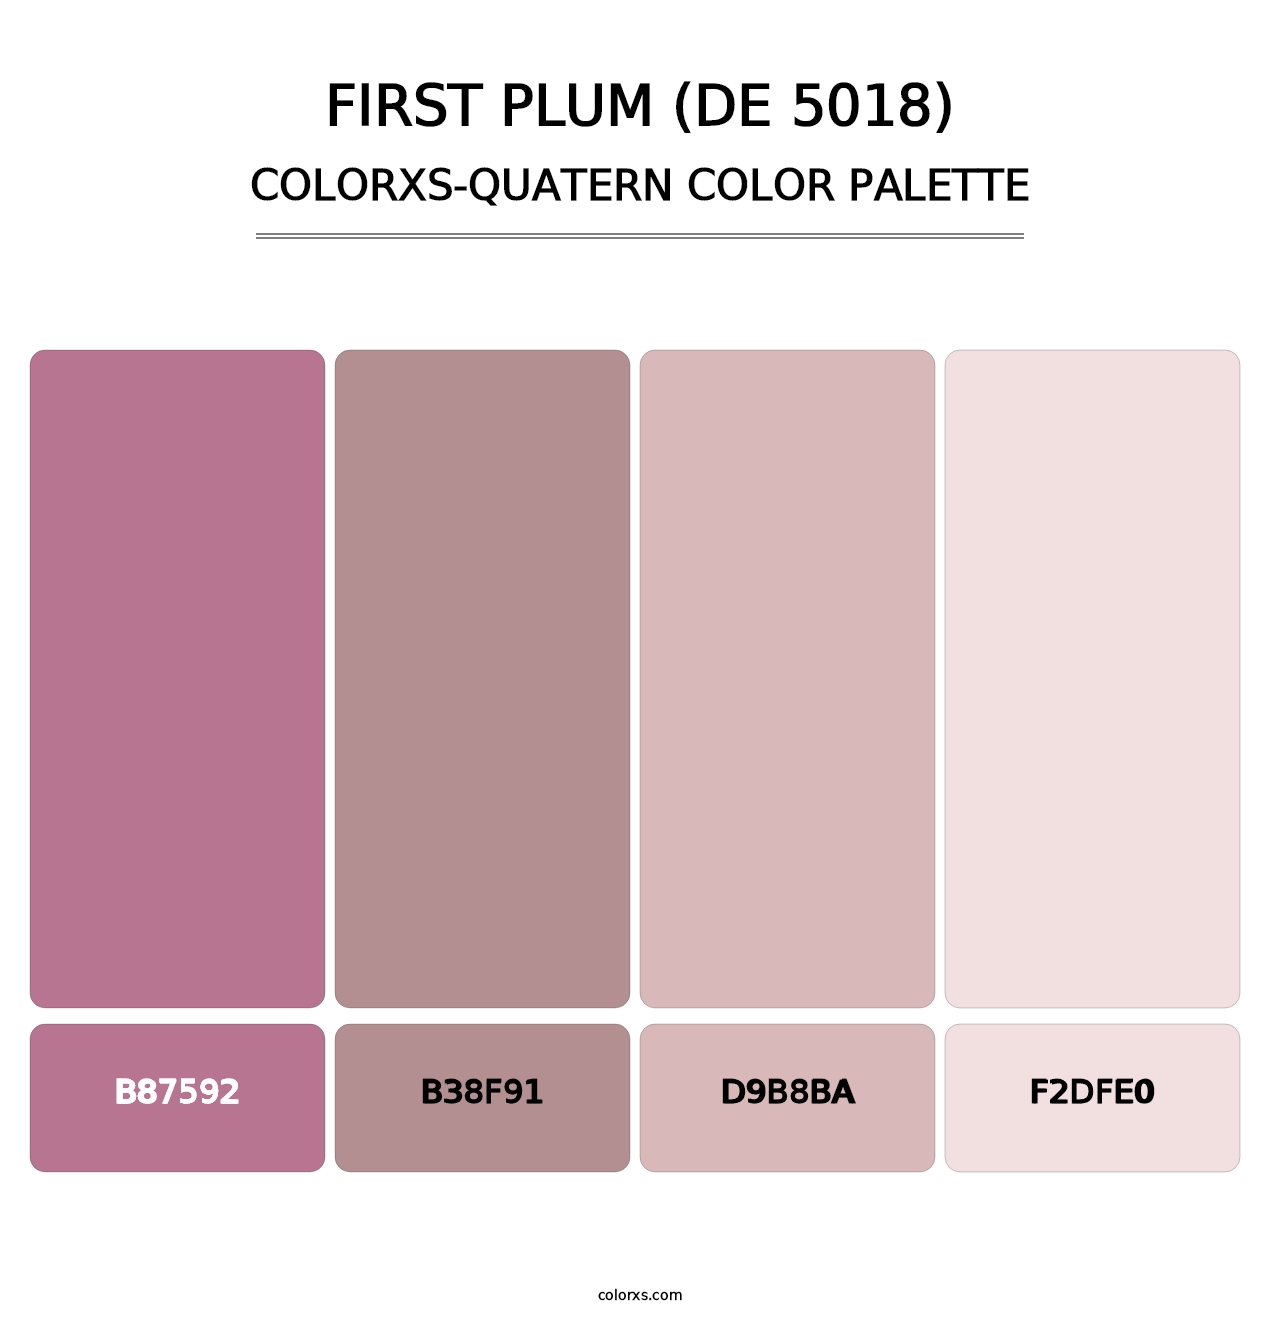 First Plum (DE 5018) - Colorxs Quatern Palette